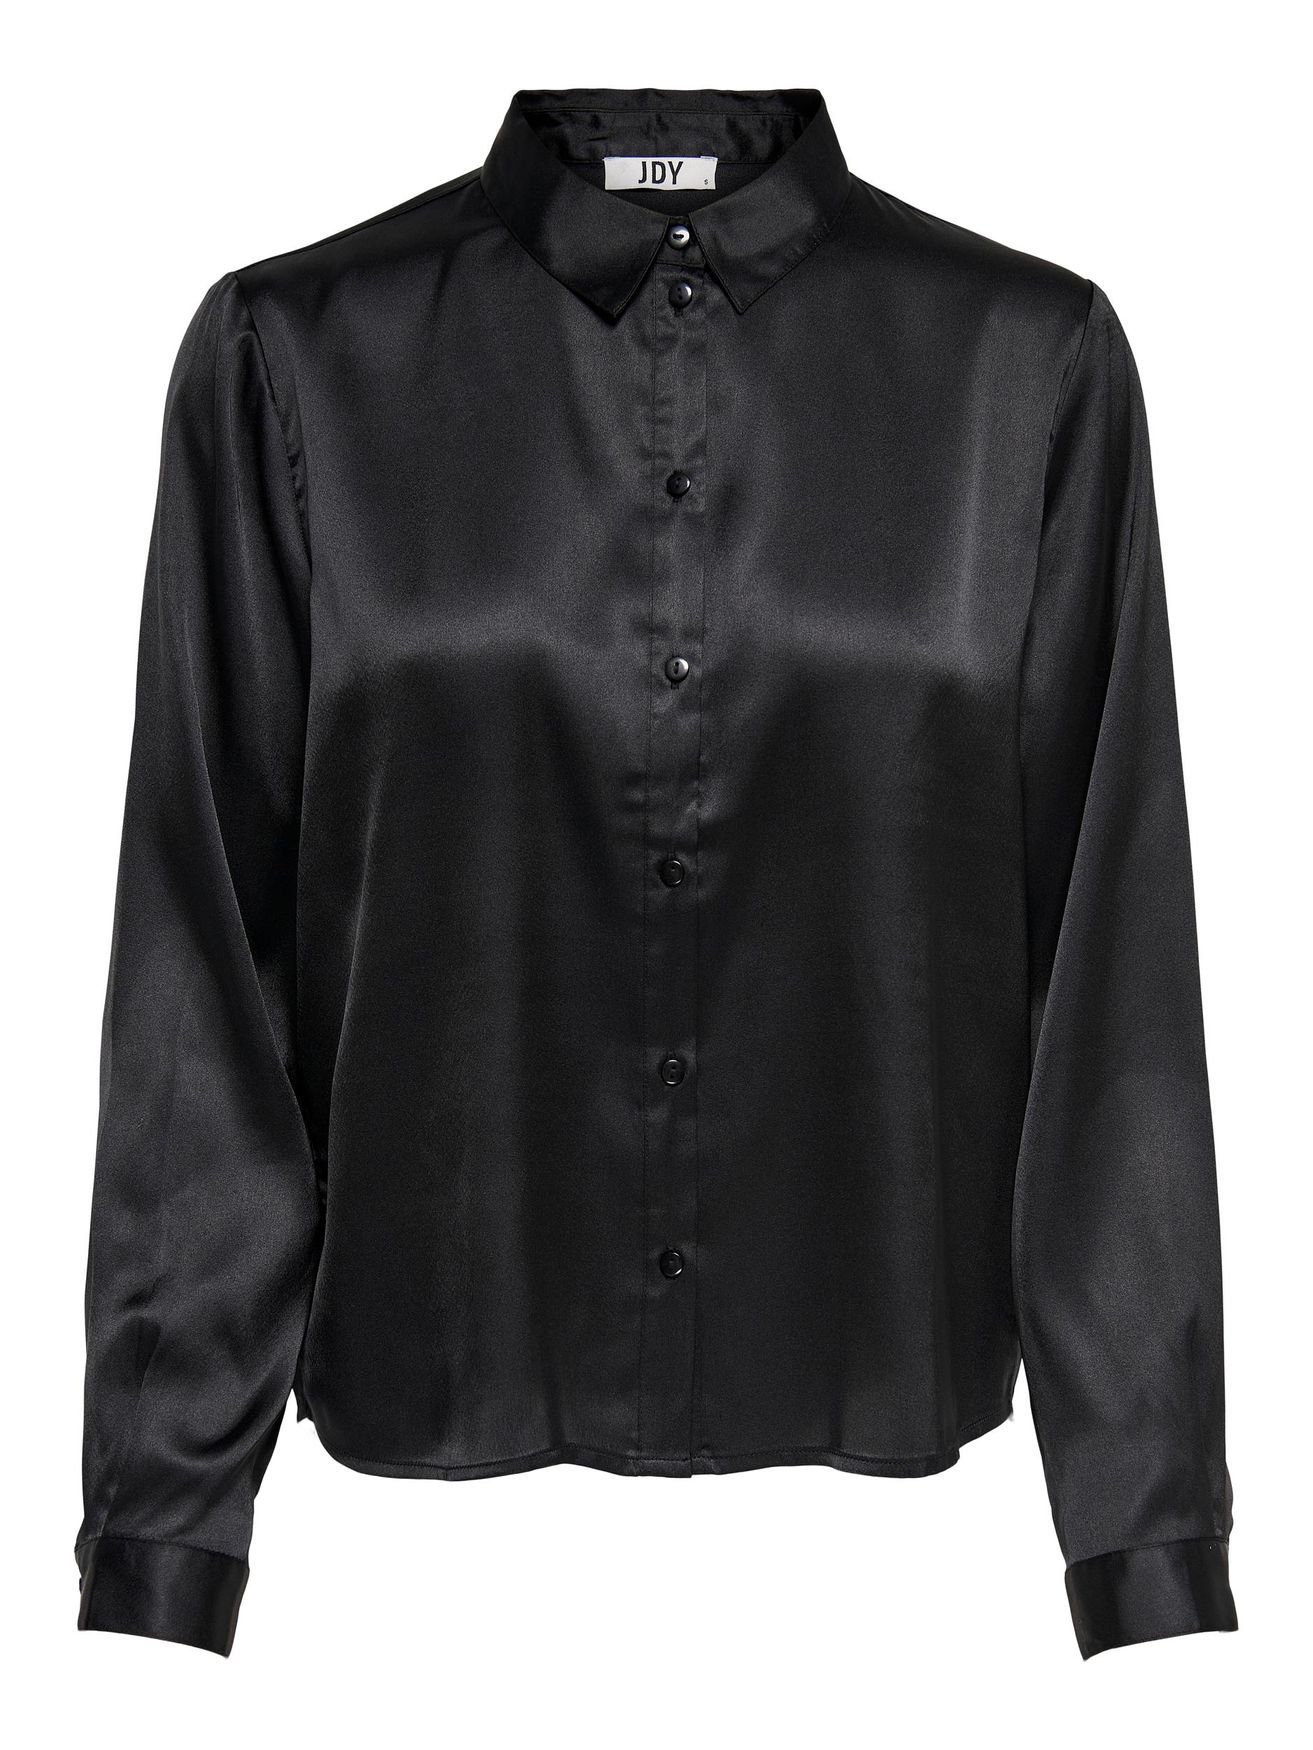 JACQUELINE de YONG 4470 Bluse Tunika Langarm JDYFIFI Satin Elegante in Business Schwarz Hemd Blusenshirt